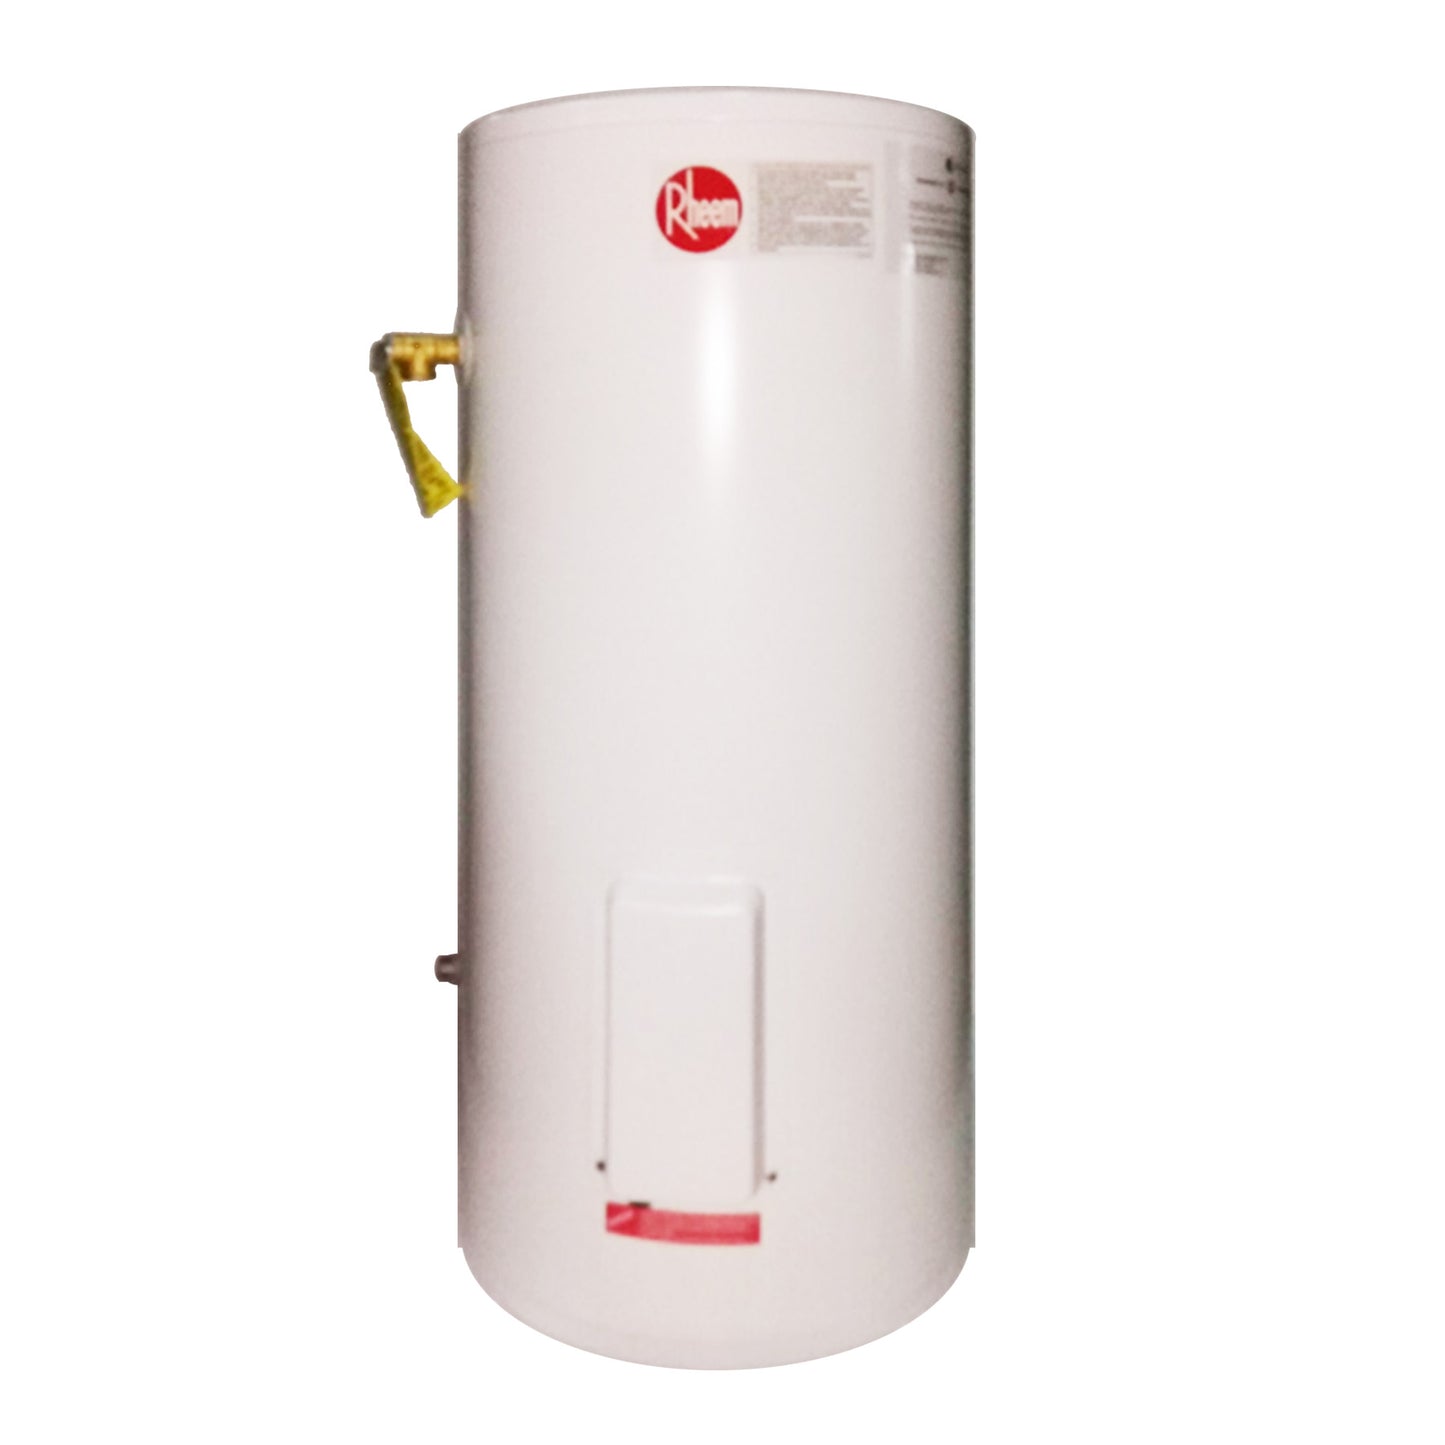 Rheem Storage Water Heater 86VP30S